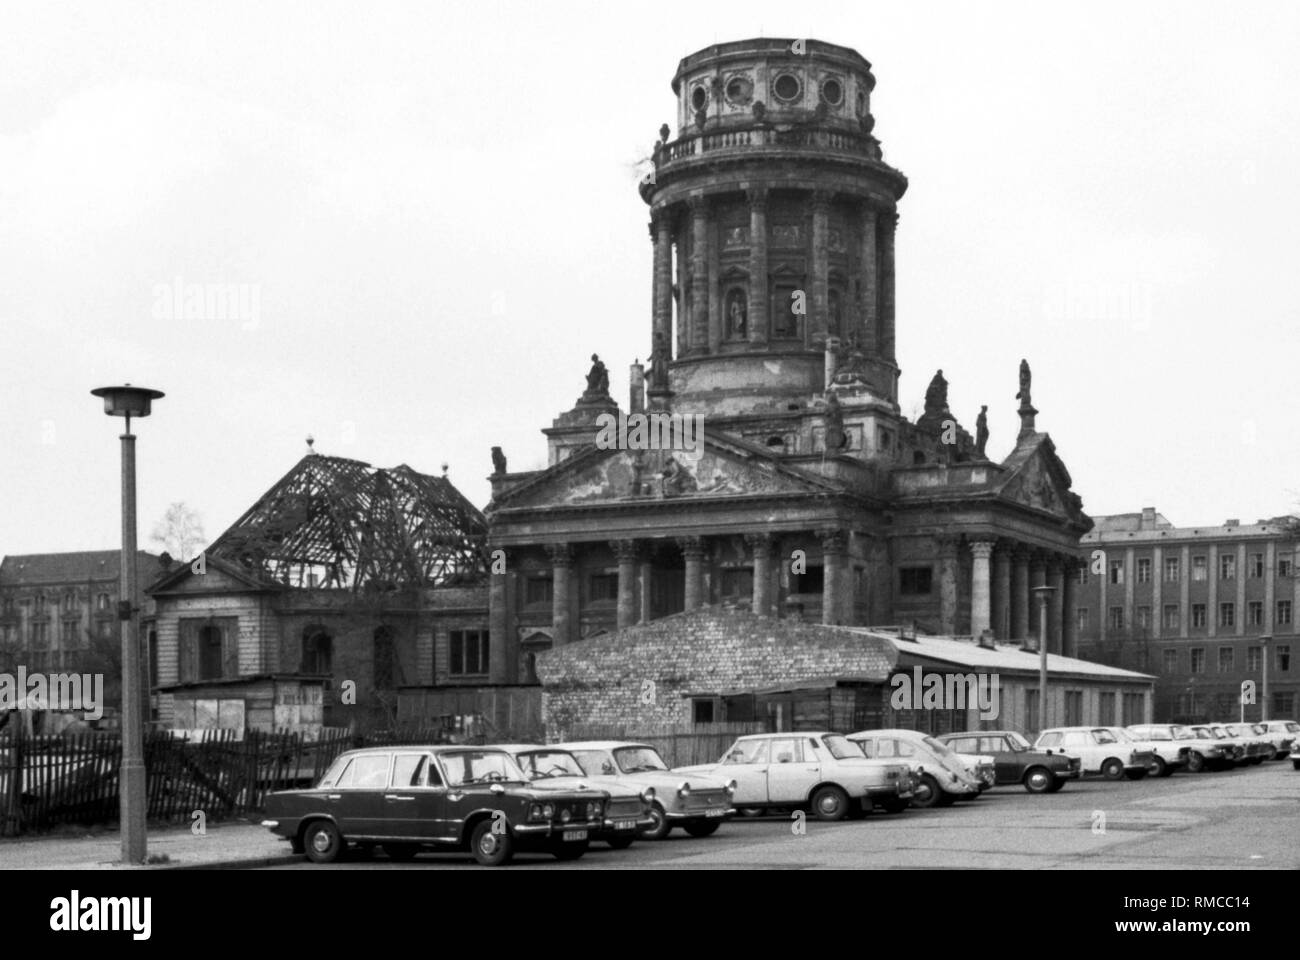 La partie est de Berlin 1976 : Ruine de la cathédrale française au Gendarmenmarkt, à partir de 1950 jusqu'à 1991 Platz der Akademie. Photo à partir de 1er mars 1969. Banque D'Images